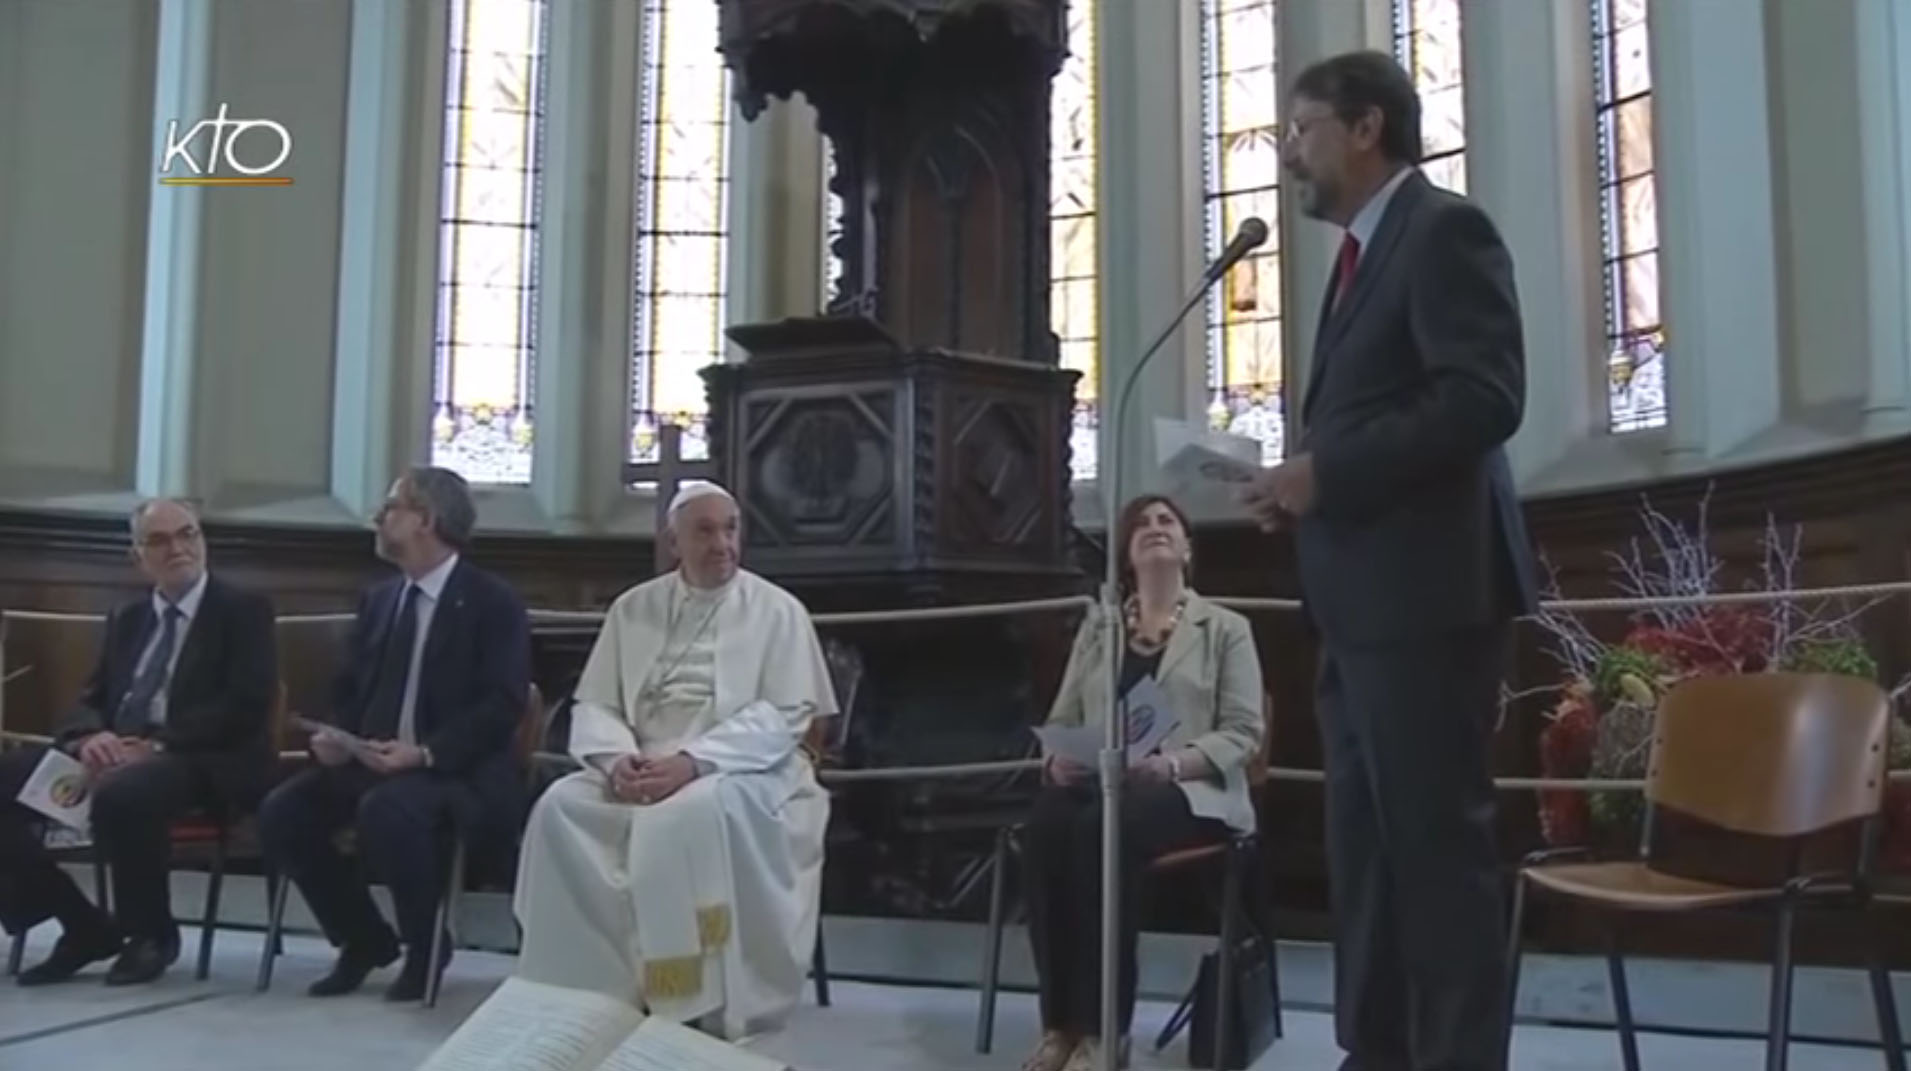 Le pape était venu dans un temple de l'Eglise vaudoise à Turin, en juin 2015. (Photo: Capture écran/KTO)